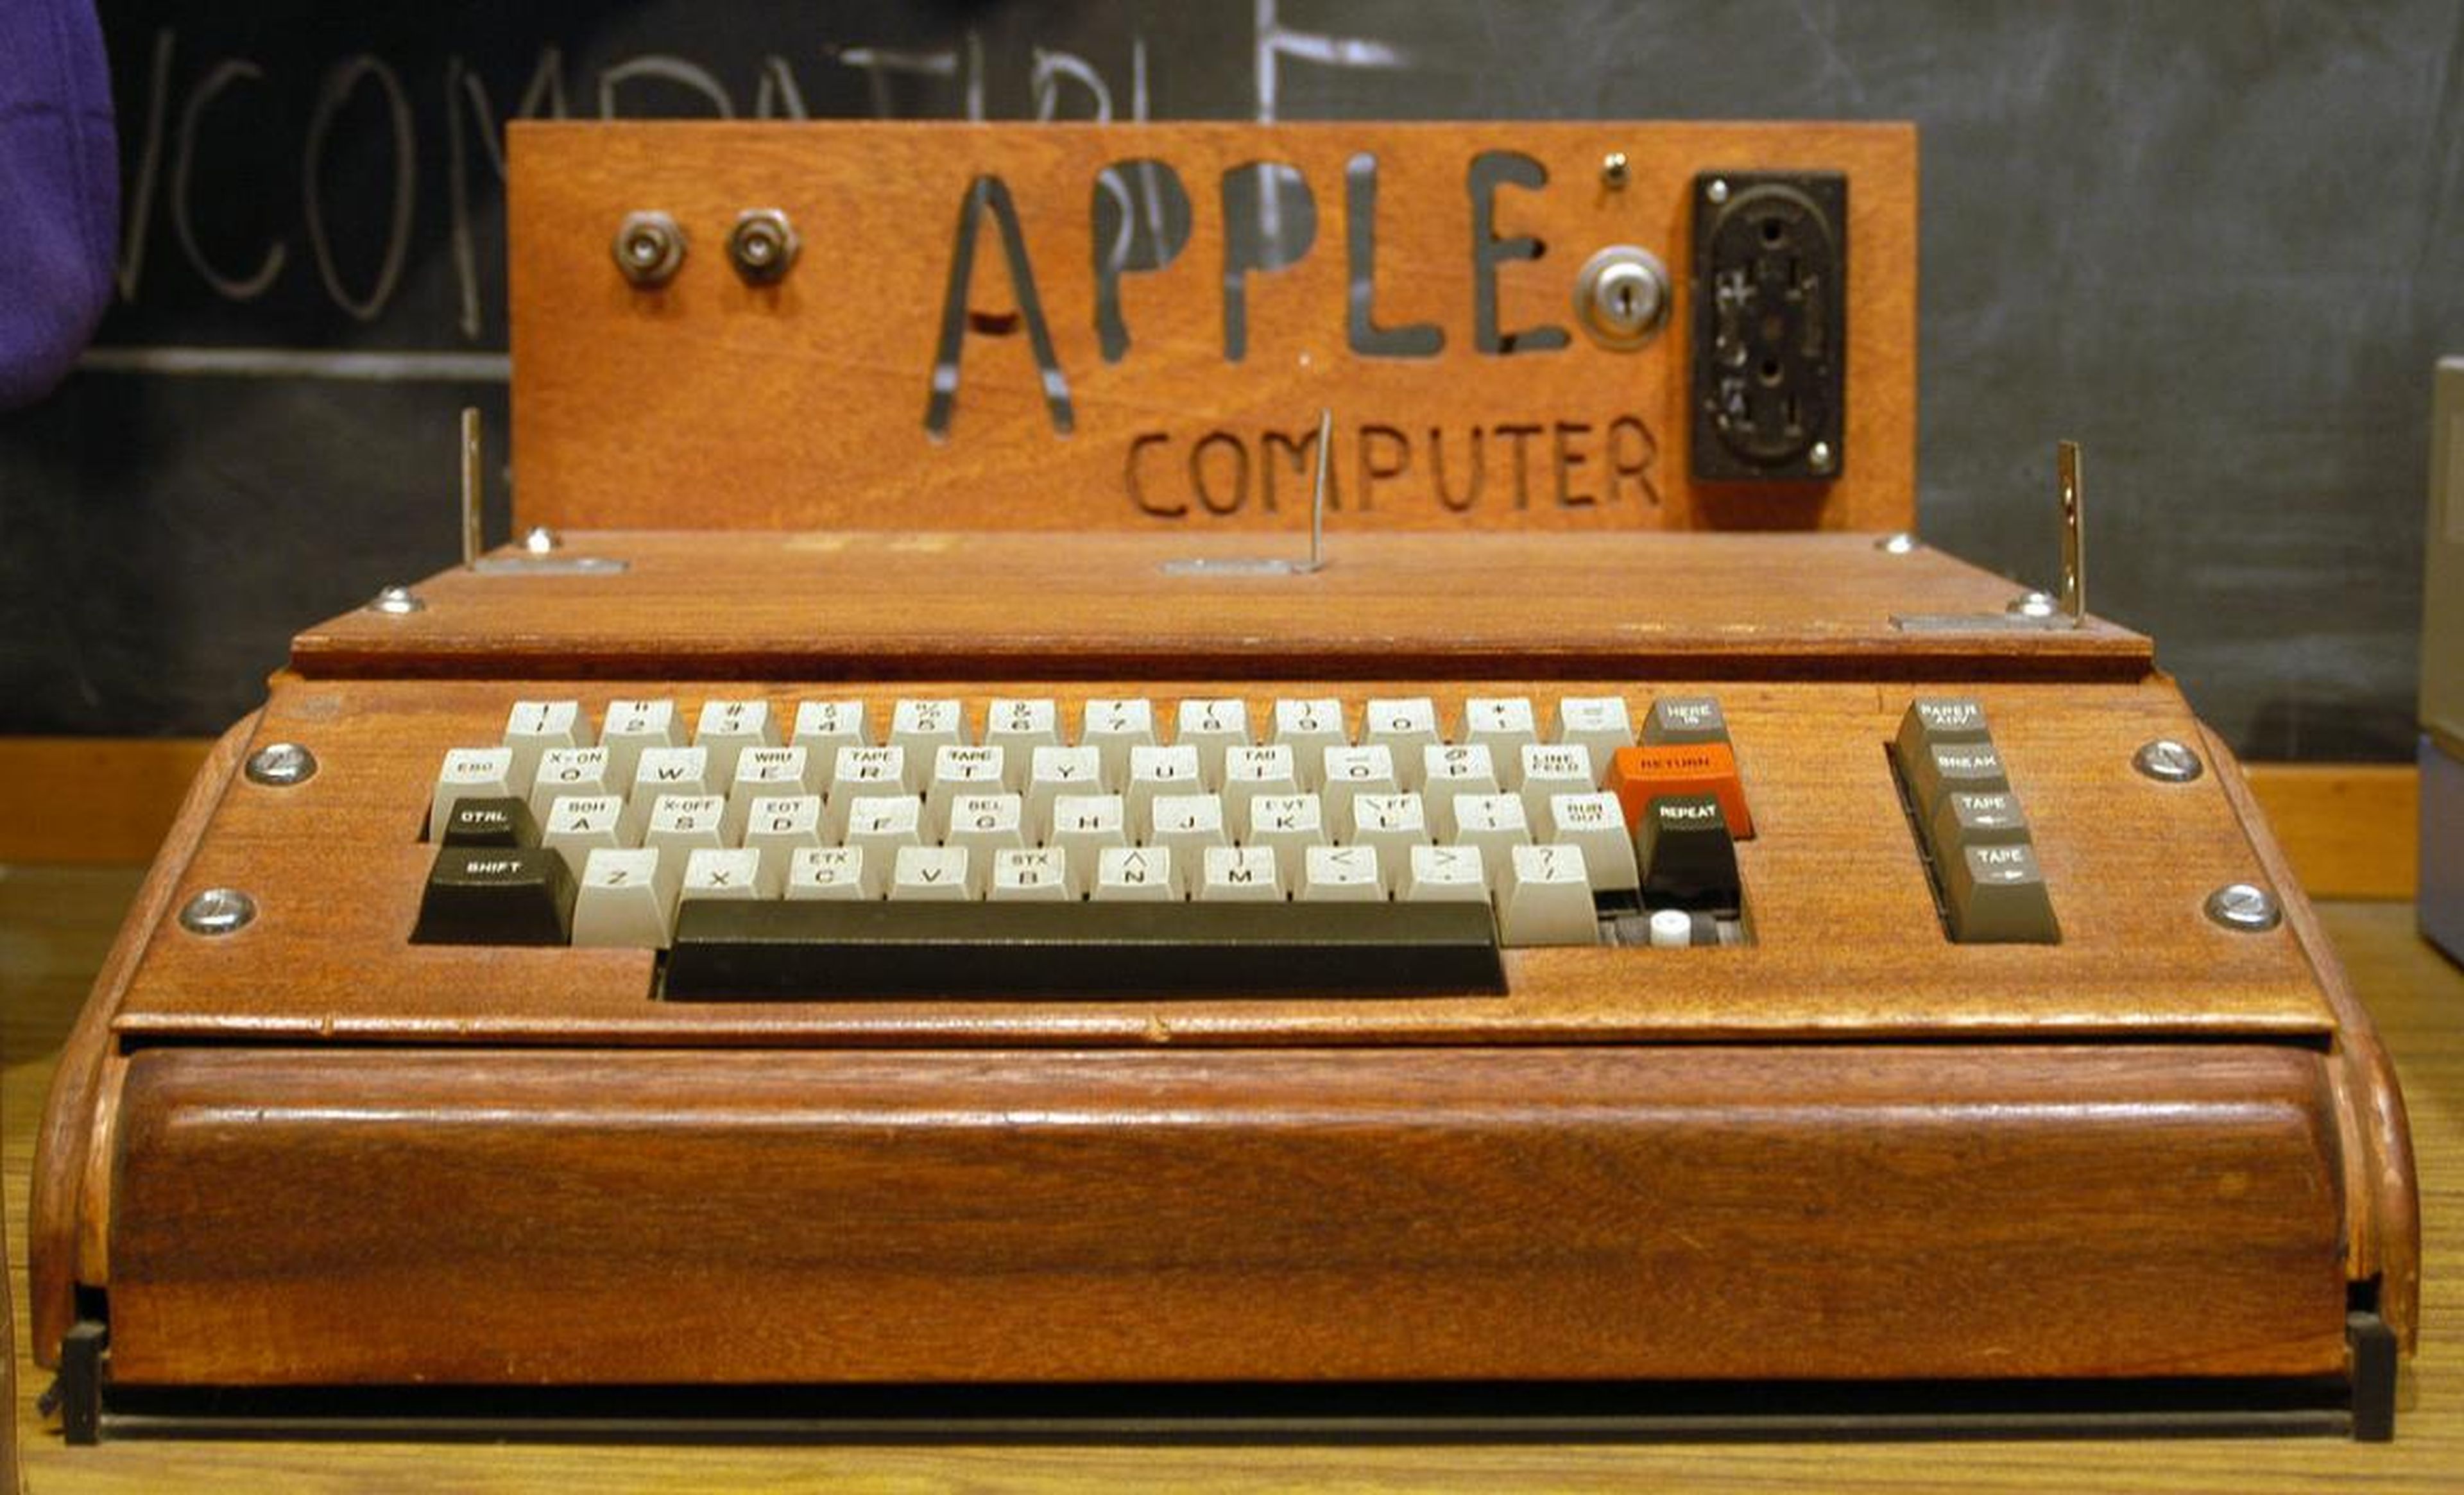 El primer producto fue el Apple I, una placa con un procesador y algo de memoria. Los clientes tenían que añadir su propio teclado y monitor, como se ve en la imagen. Se vendía por 666,66 dólares.